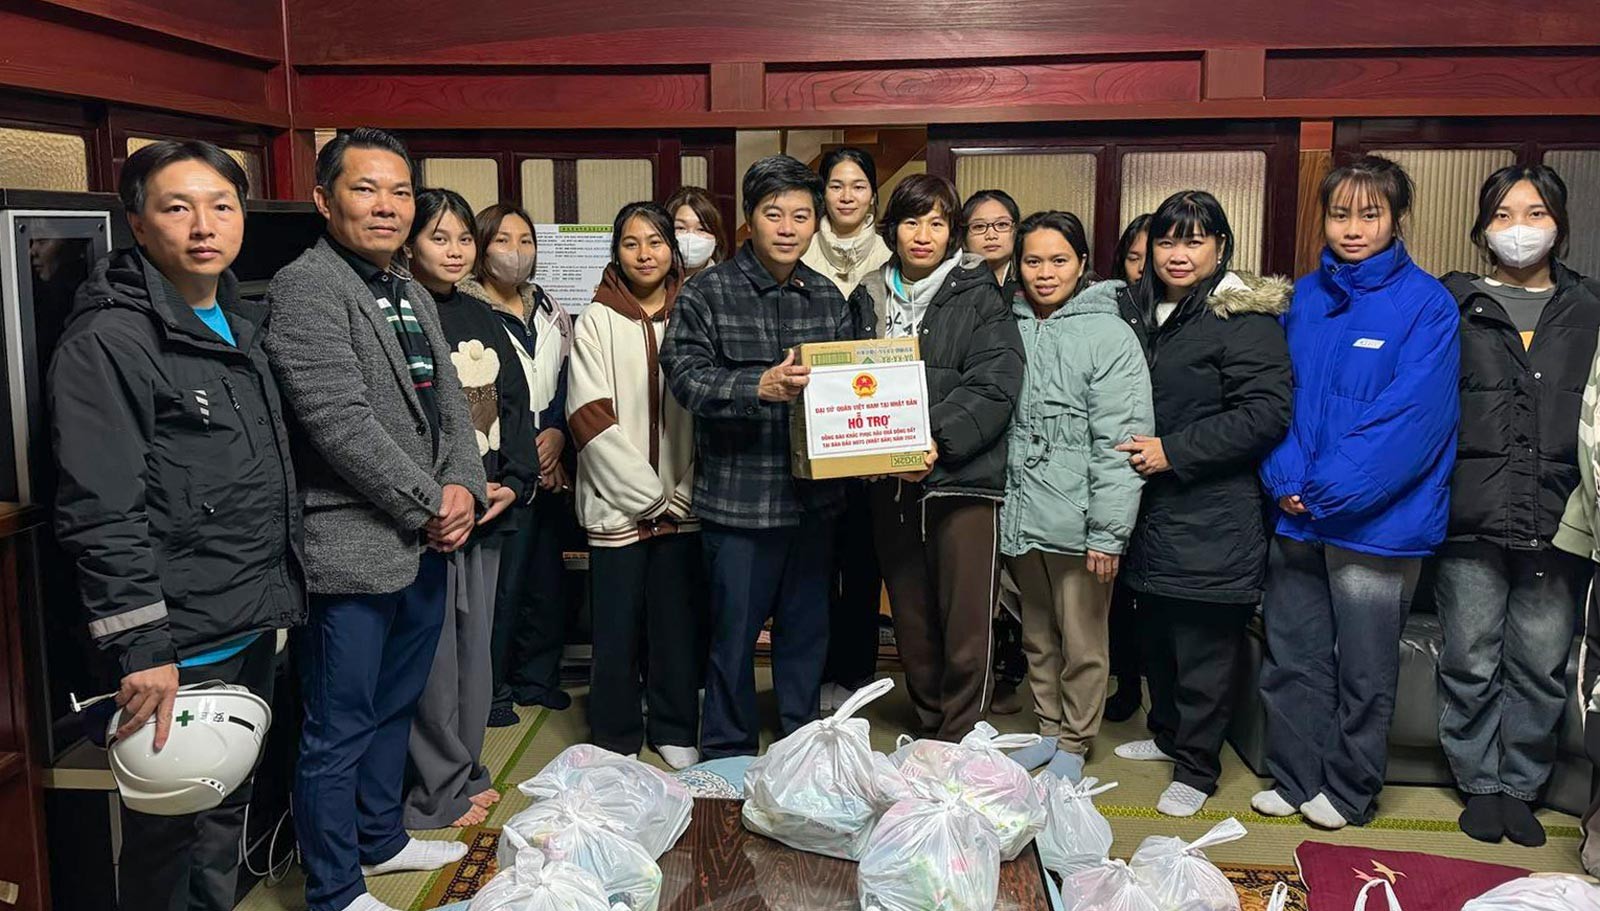 Đoàn tới thăm khu “kí túc xá” của các thực tập sinh đang làm việc tại các nhà máy chế biến thực phẩm tại thành phố Nanao, tỉnh Ishikawa – một nhóm mới liên lạc được với mạng lưới cứu trợ.